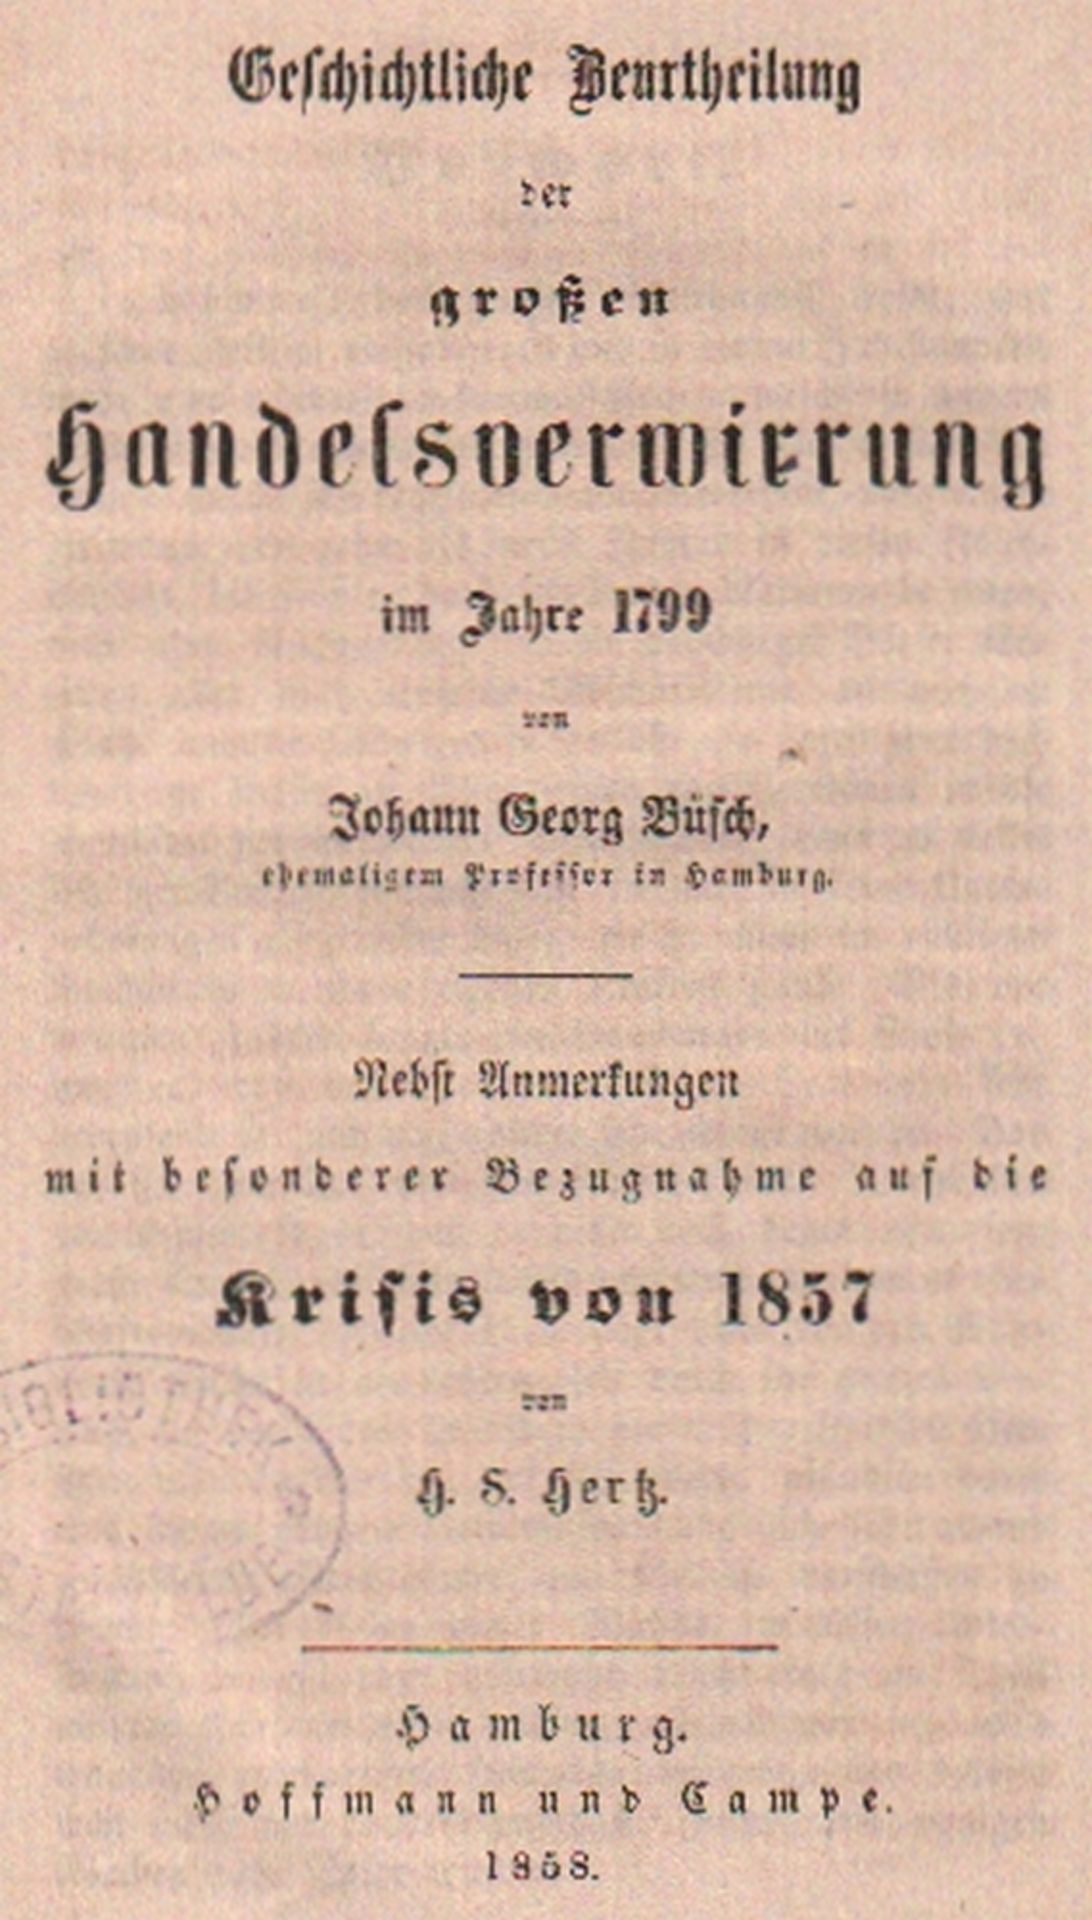 Büsch, Johann Georg, & H. S. Hertz. Geschichtliche Beurtheilung der großen Handelsverwirrung im